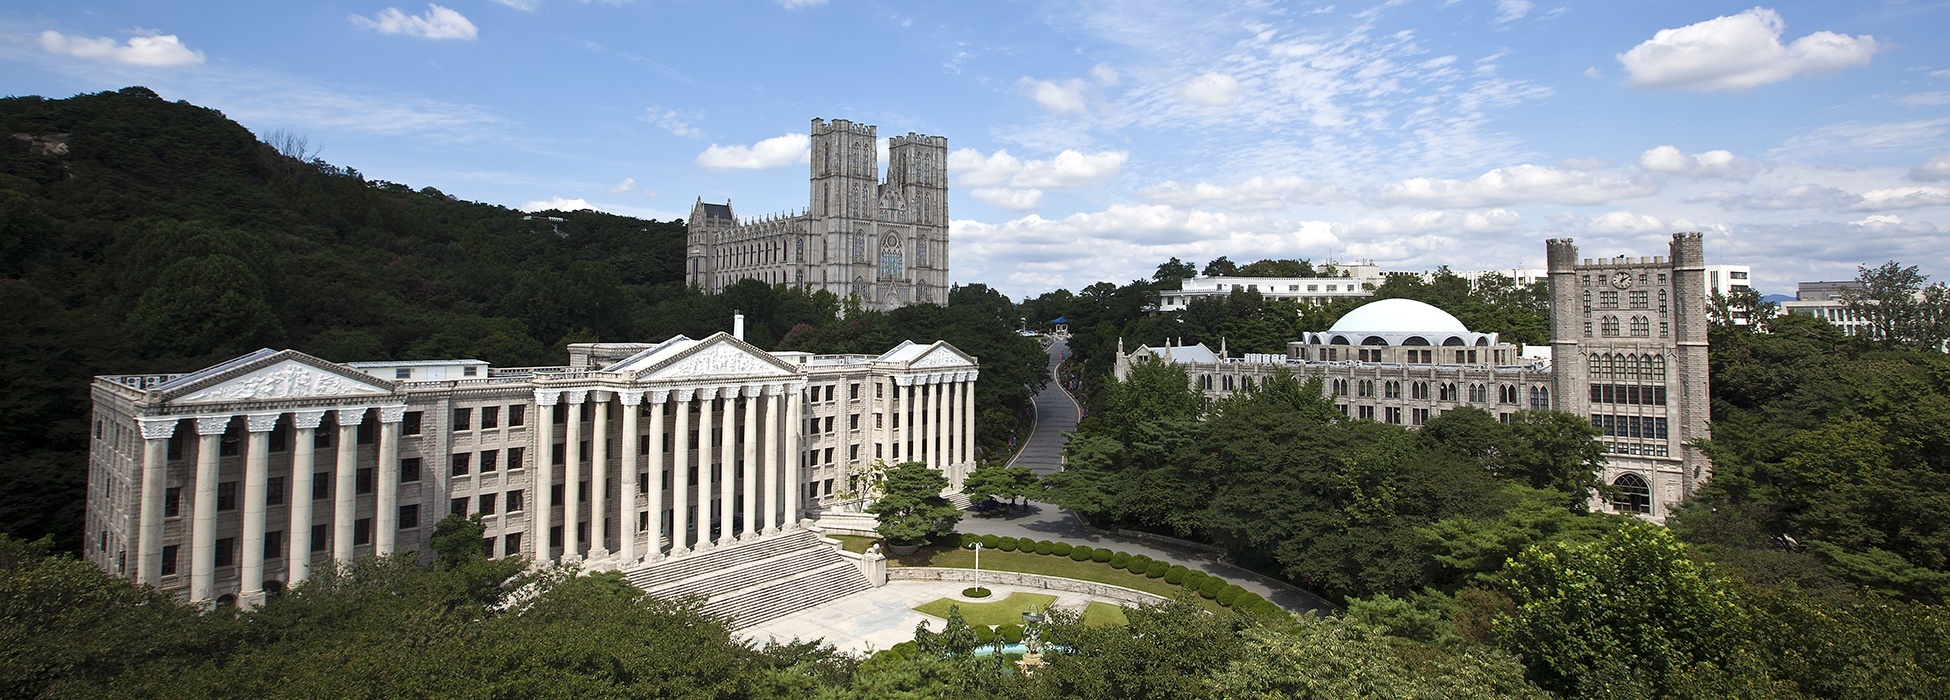 庆熙大学:韩国2018年韩国大学综合排名中位列